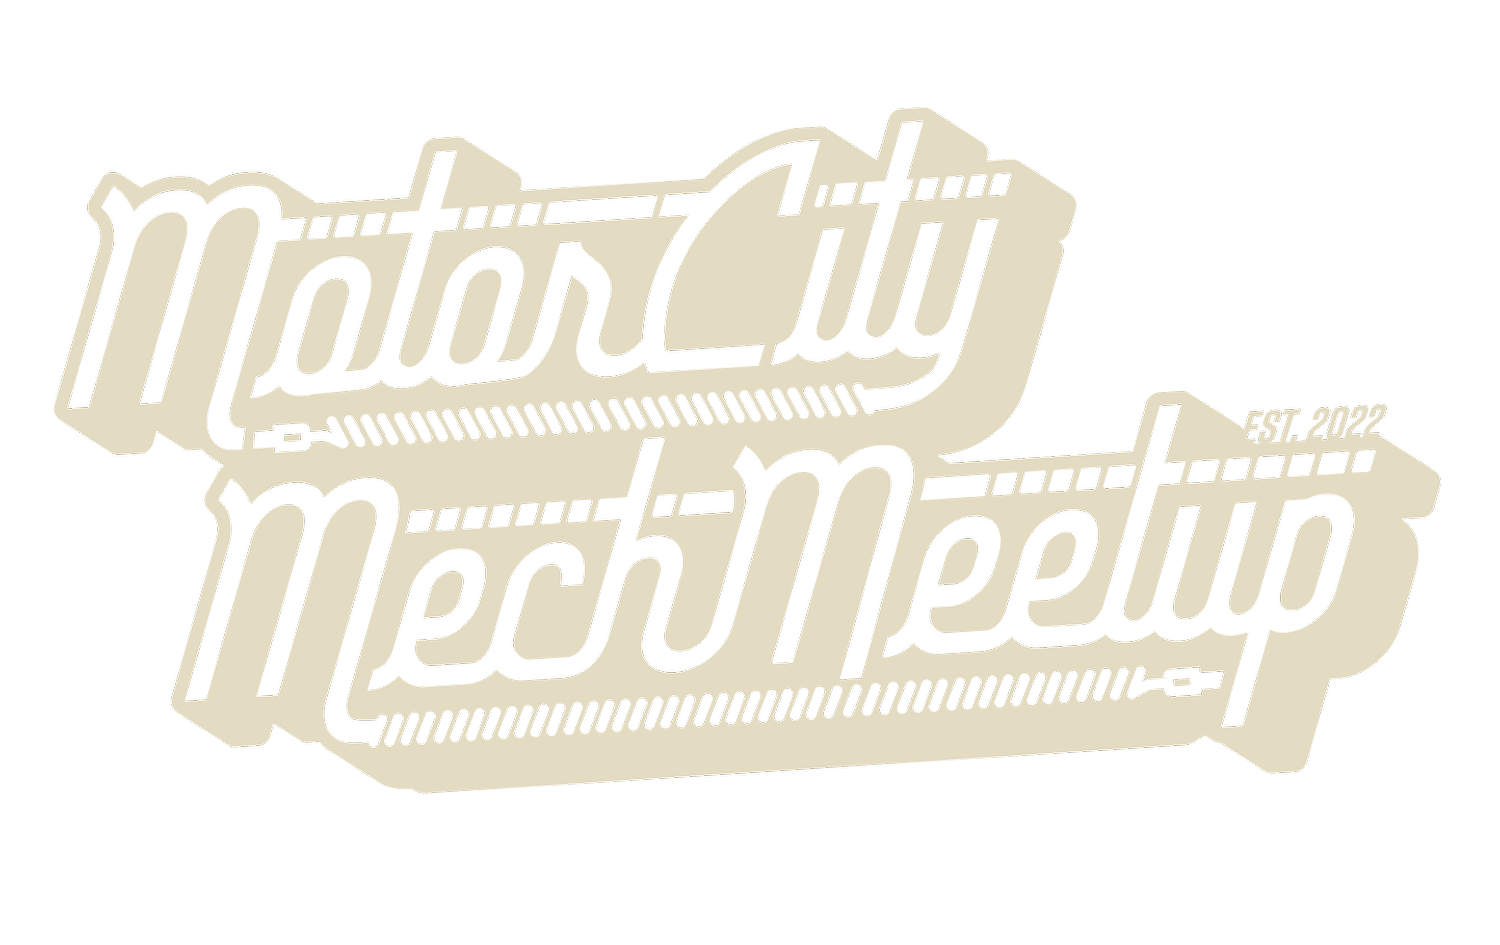 Motor City Mech Meetup